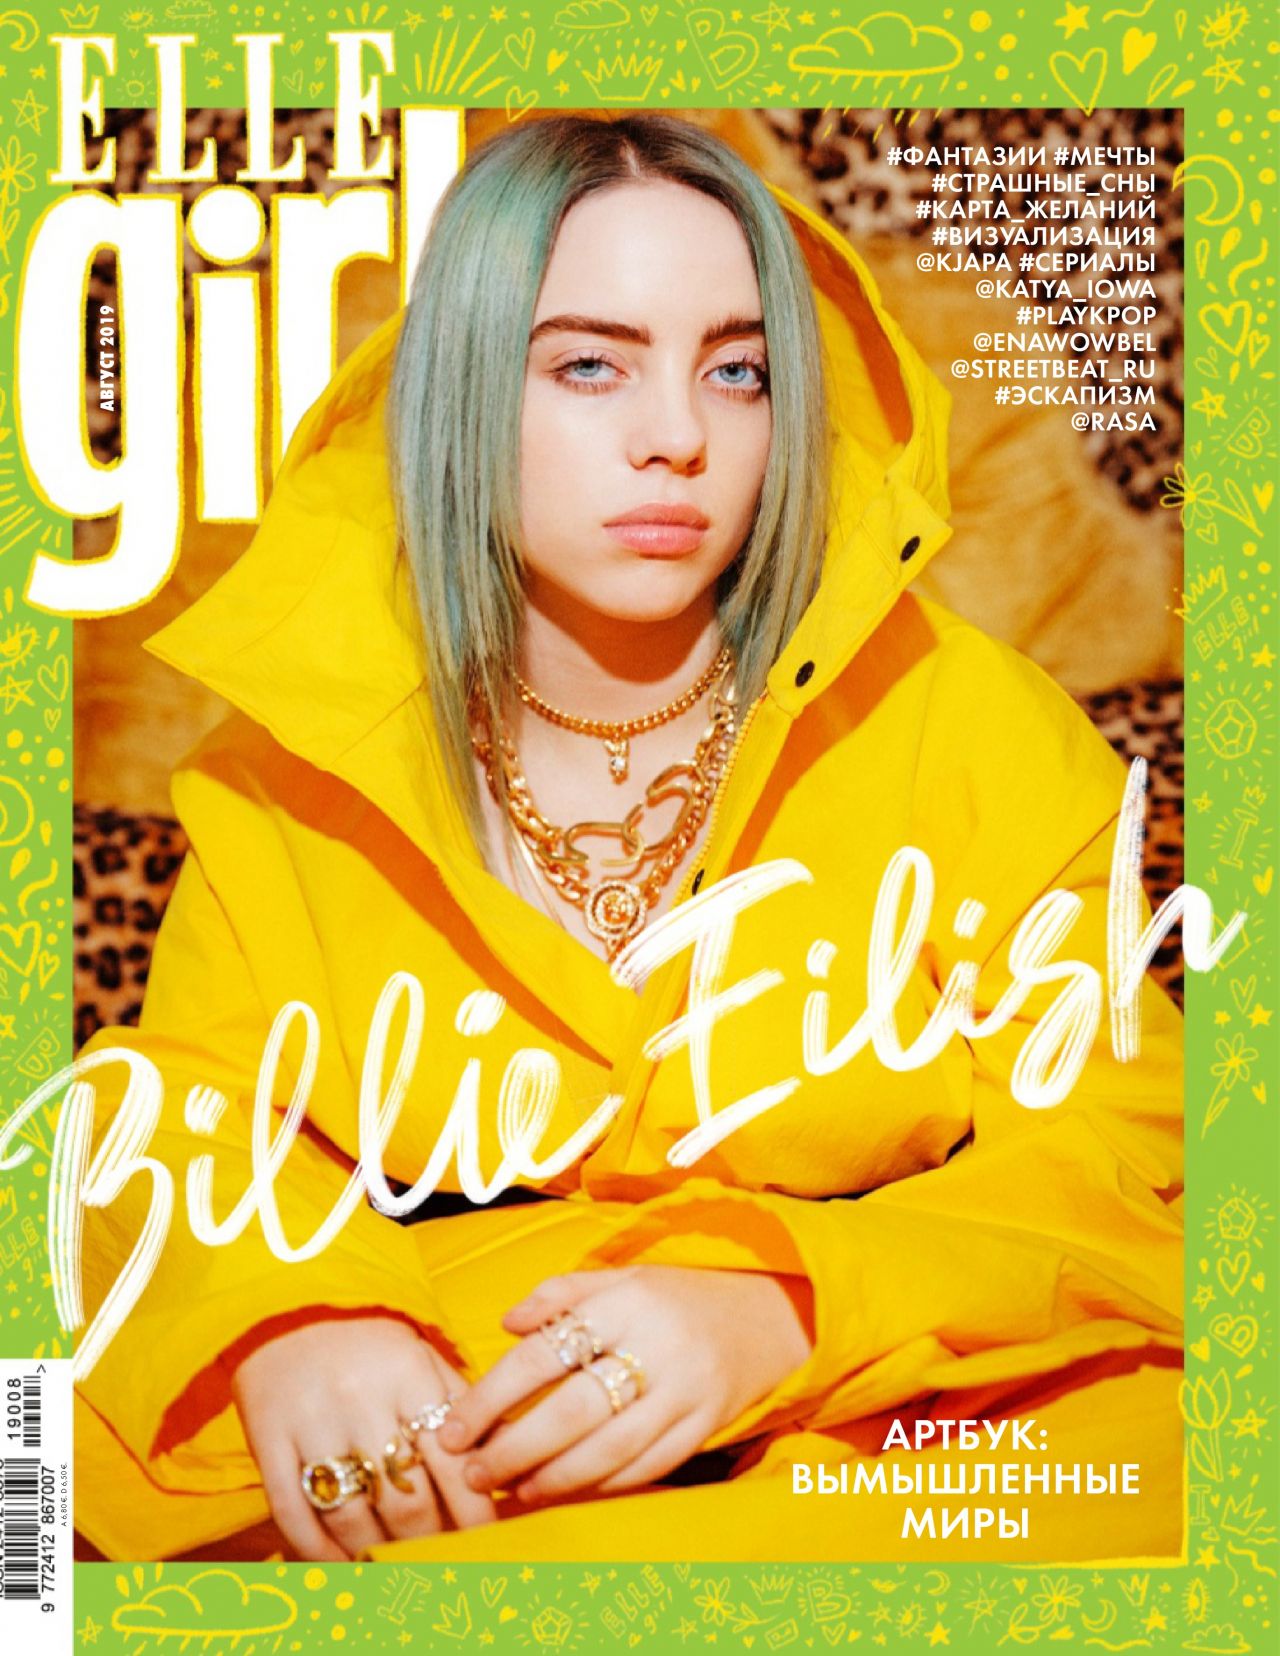 Billie Eilish 2019 Magazine Wallpapers